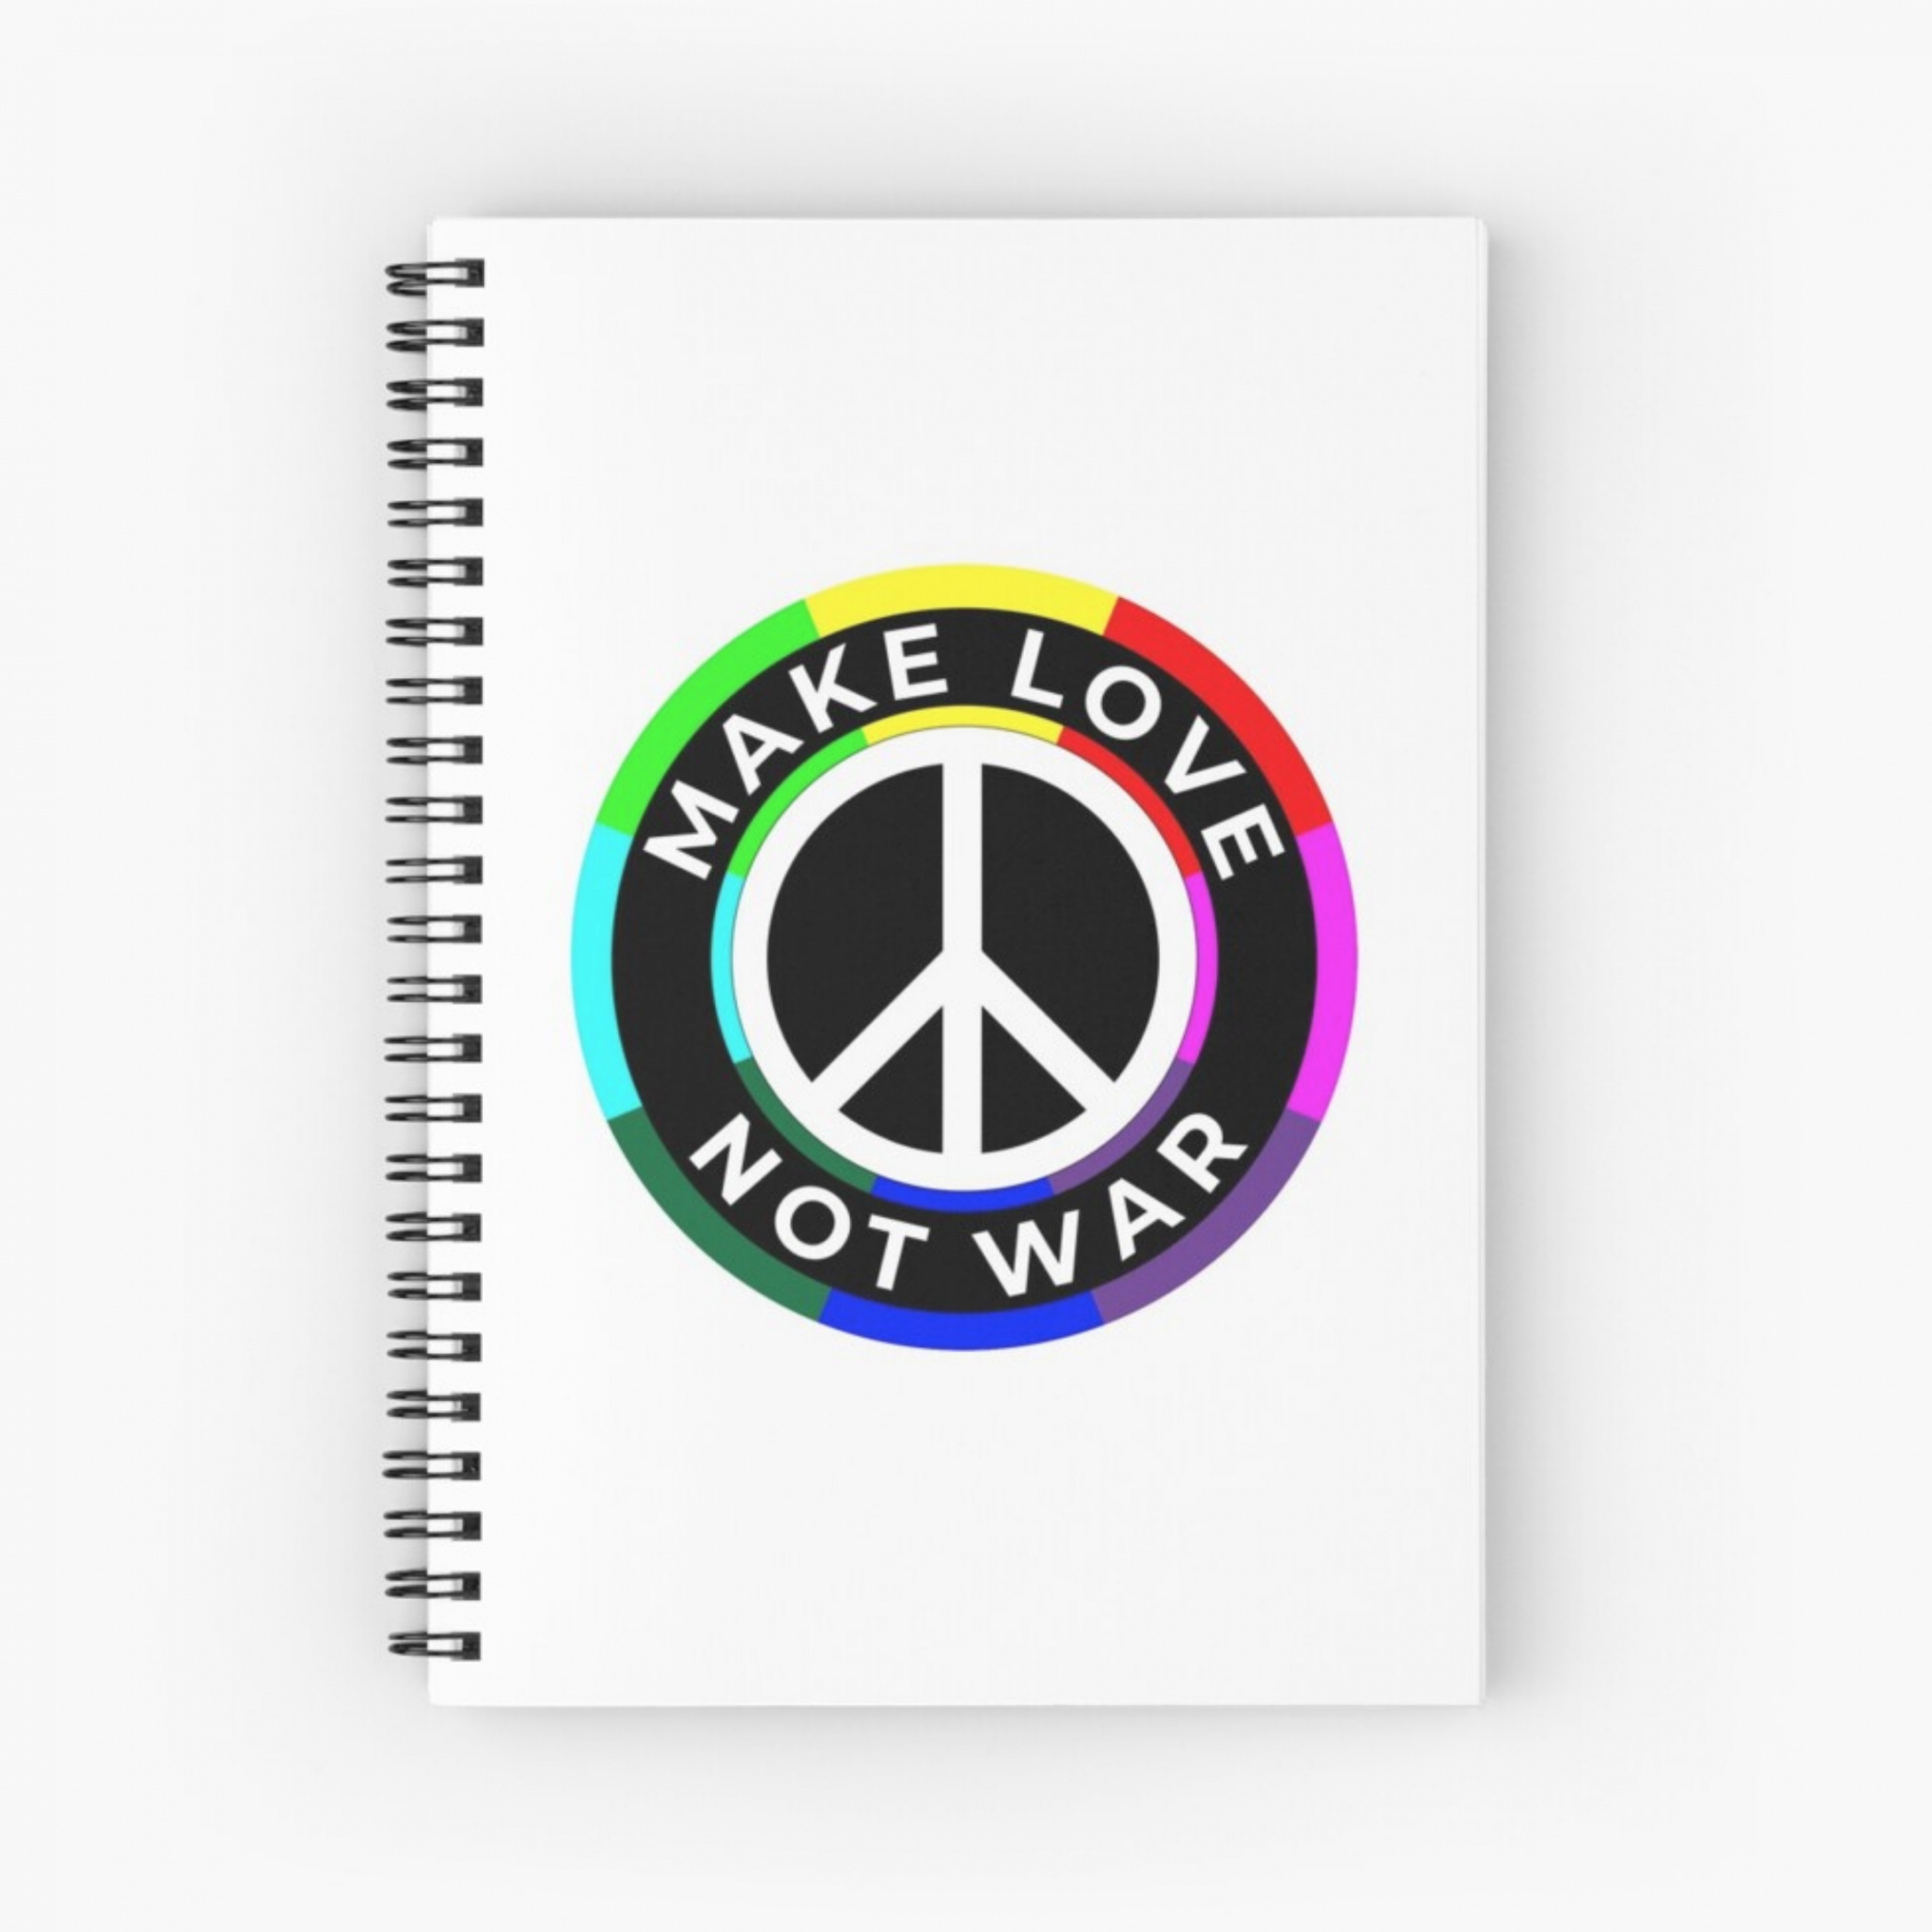 Make Love Not War - spiral notebook